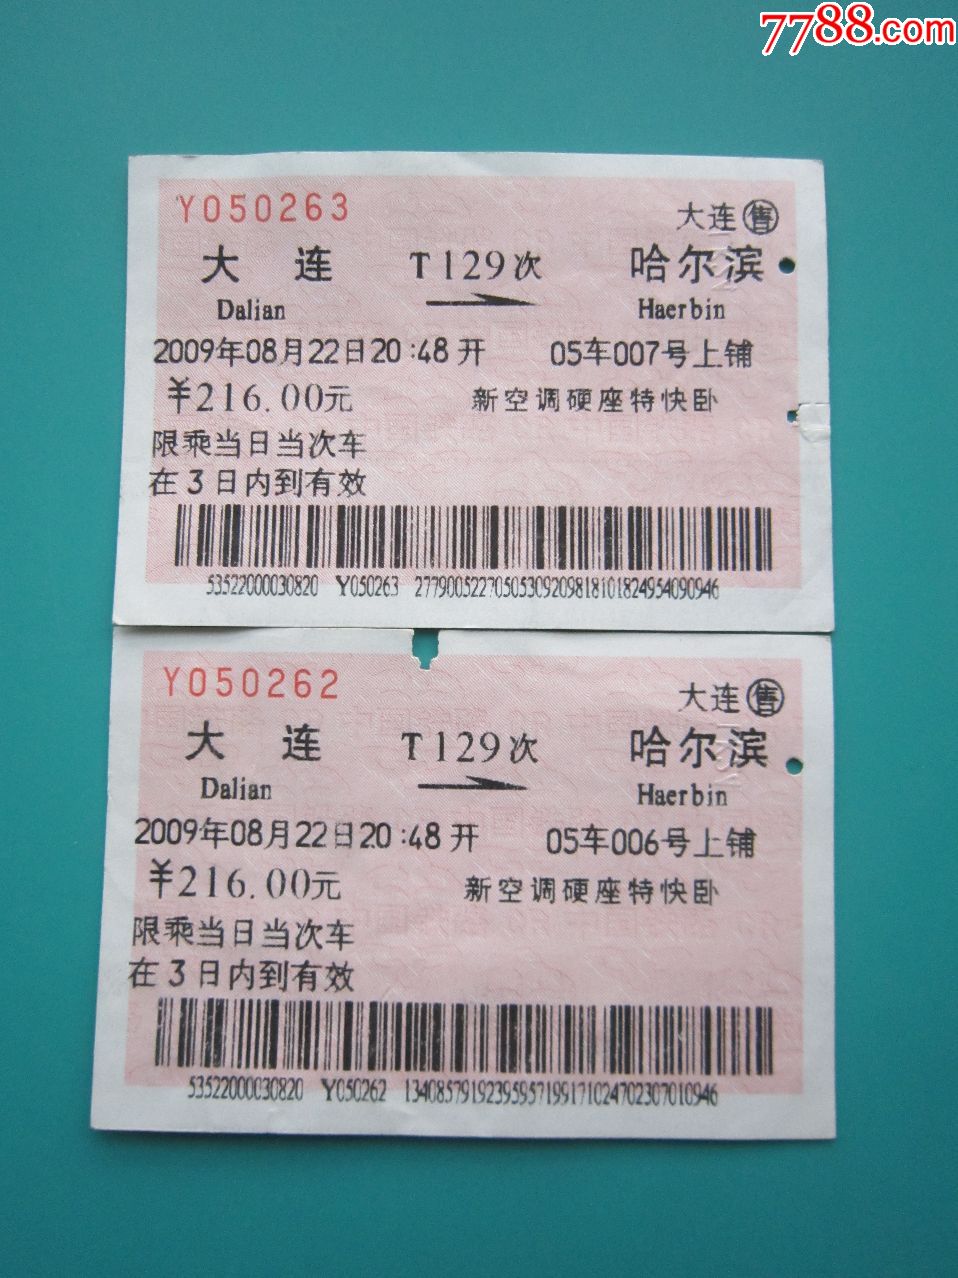 大连---哈尔滨T129次火车票两枚